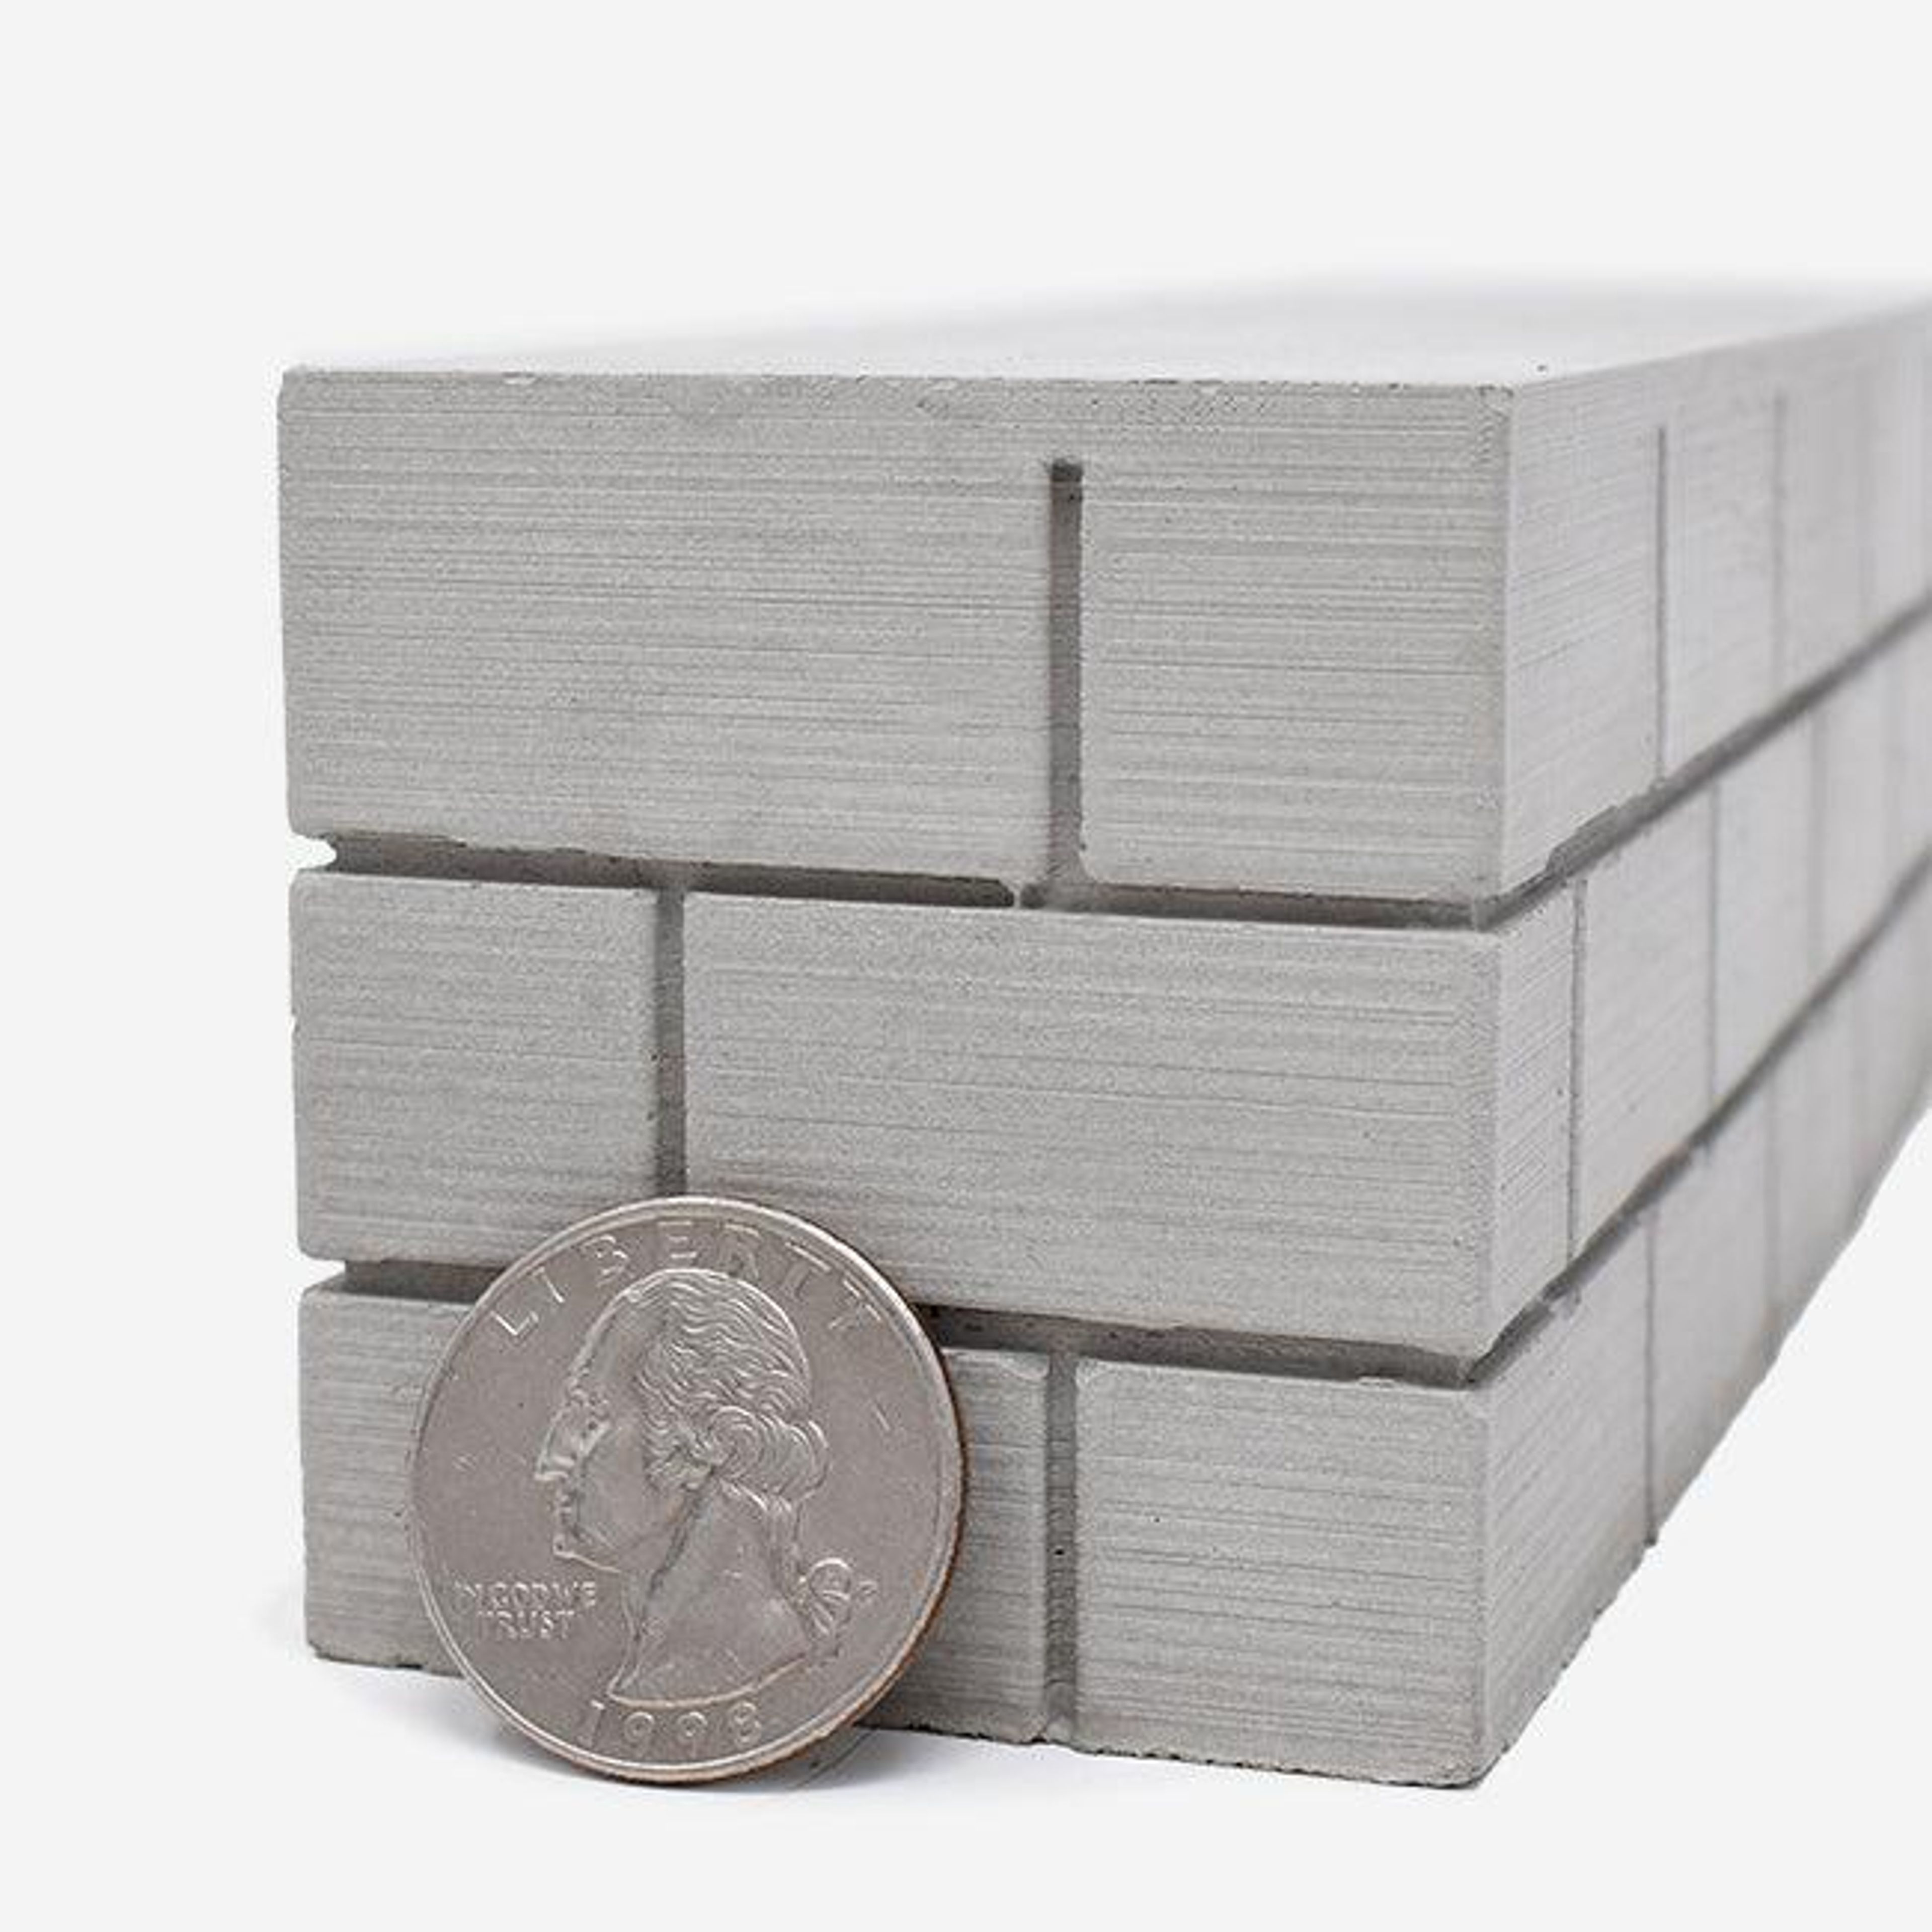 1:12 Scale Mini Concrete Block Wall